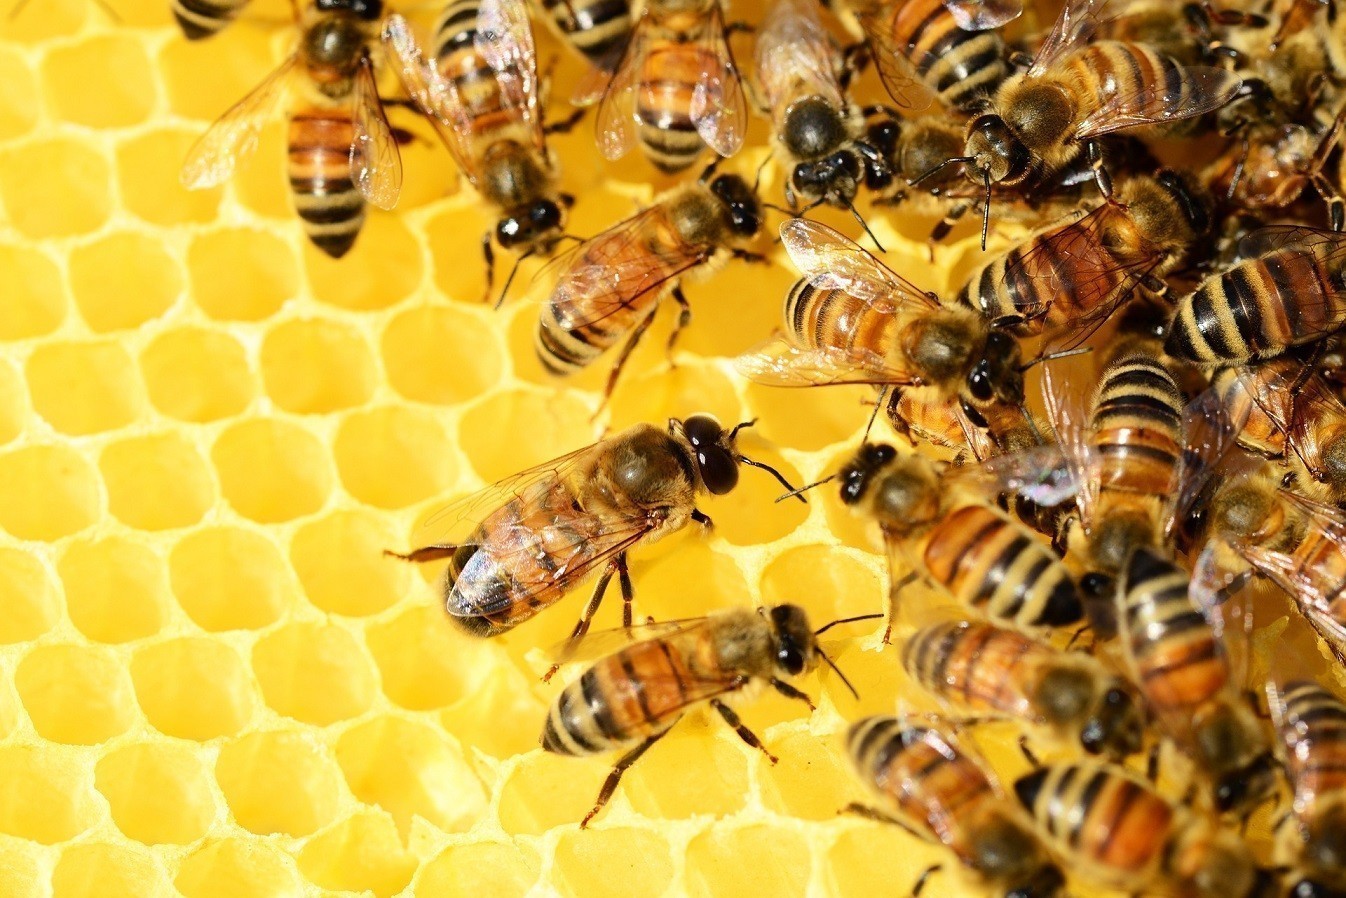 ΥΠΑΑΤ: Ενισχύσεις 12 εκατ. ευρώ στους μελισσοκόμους για τις επιπτώσεις από τον πόλεμο στην Ουκρανία